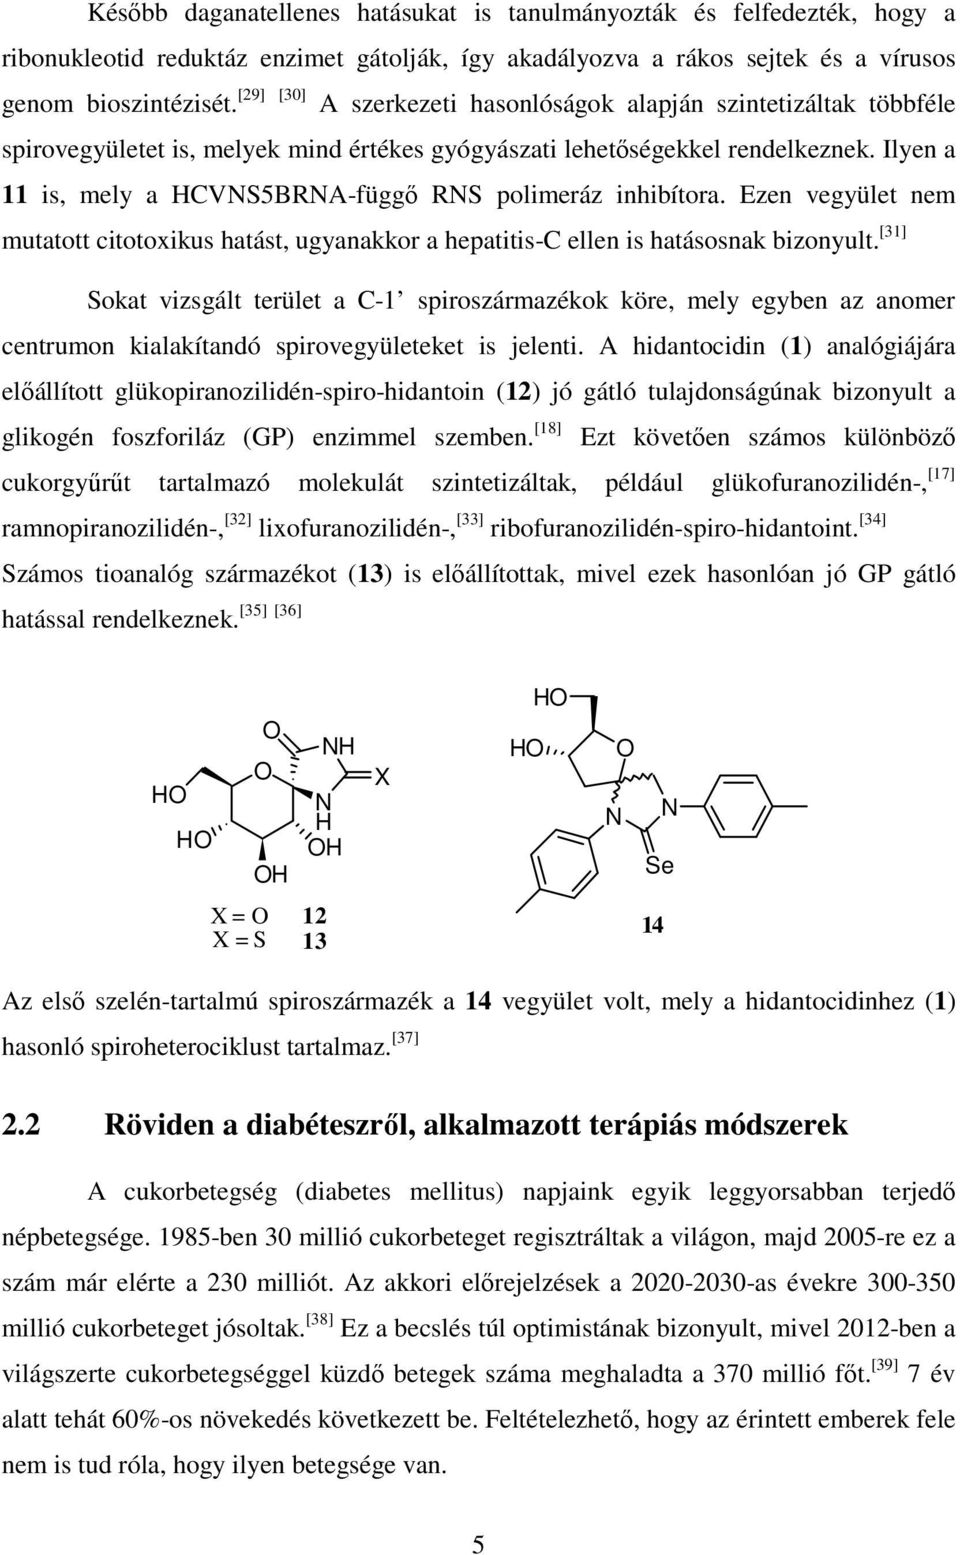 Ilyen a 11 is, mely a CV5BA-függő polimeráz inhibítora. Ezen vegyület nem mutatott citotoxikus hatást, ugyanakkor a hepatitis-c ellen is hatásosnak bizonyult.